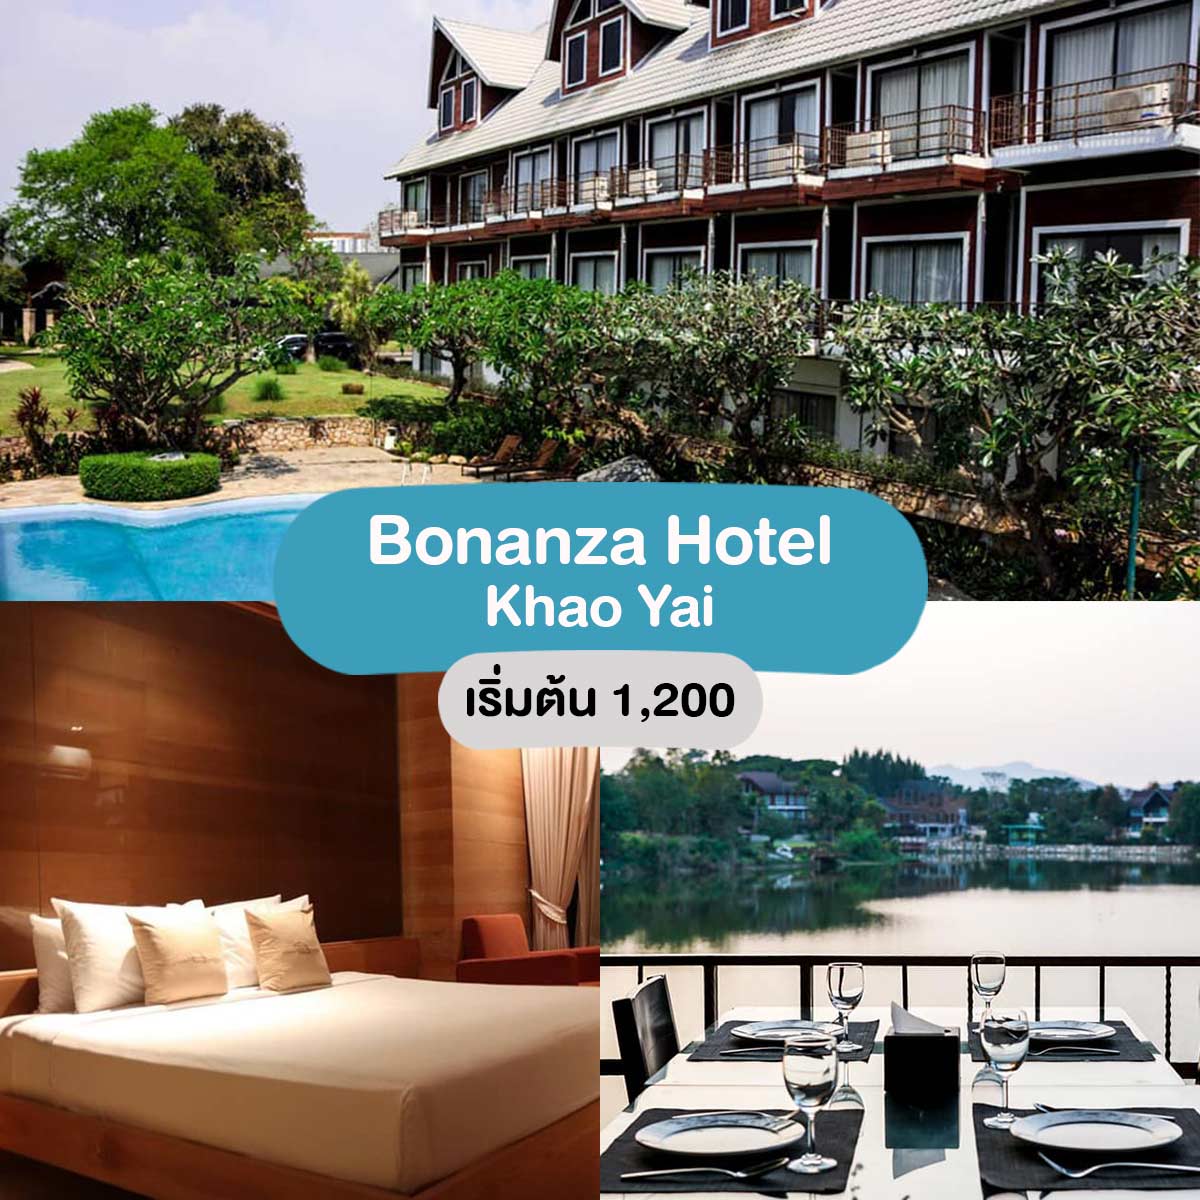 Bonanza Hotel Khaoyai